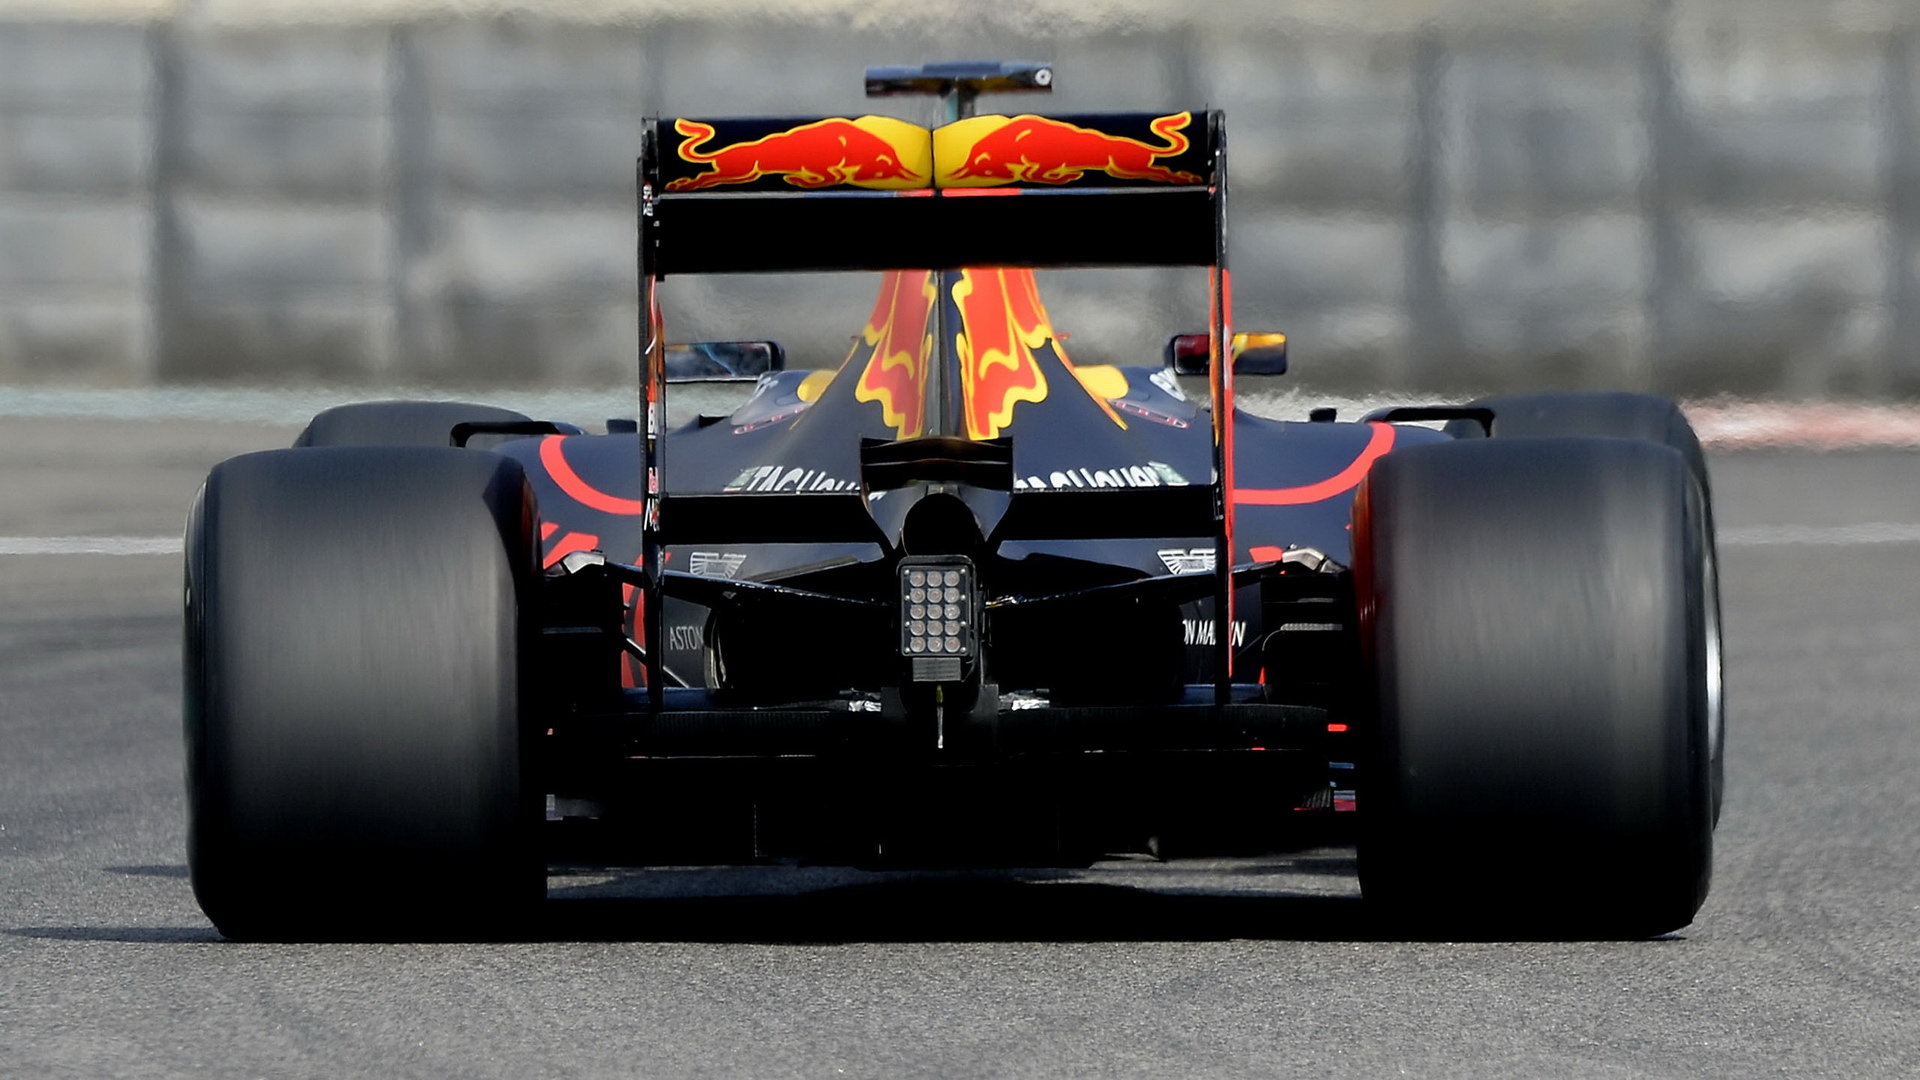 S Red Bullem v úterý kroužili závodní piloti - Daniel Ricciardo dopoledne, poté ho vystřídal Max Verstappen